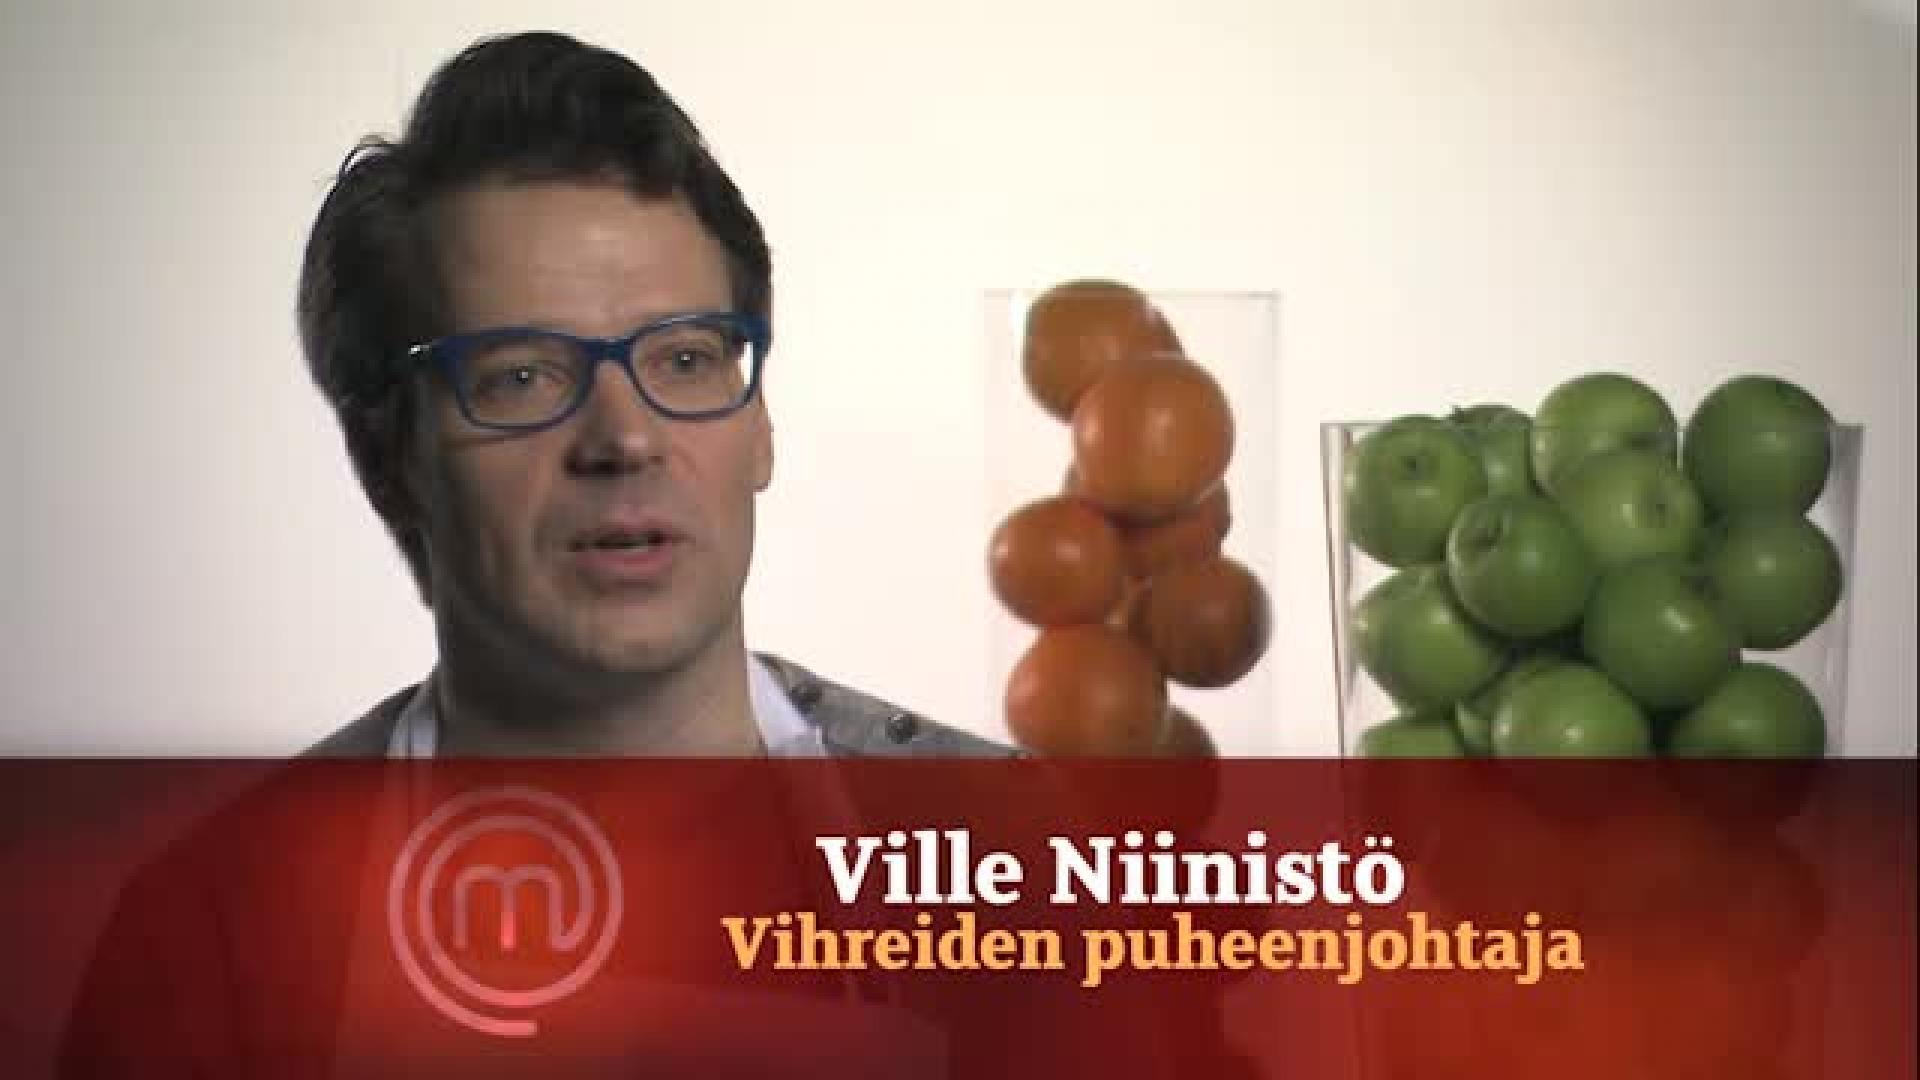 Vihreiden puheenjohtaja Ville Niinistö: "Ruuanlaittoa tv:ssä en oo vielä kokeillu!"